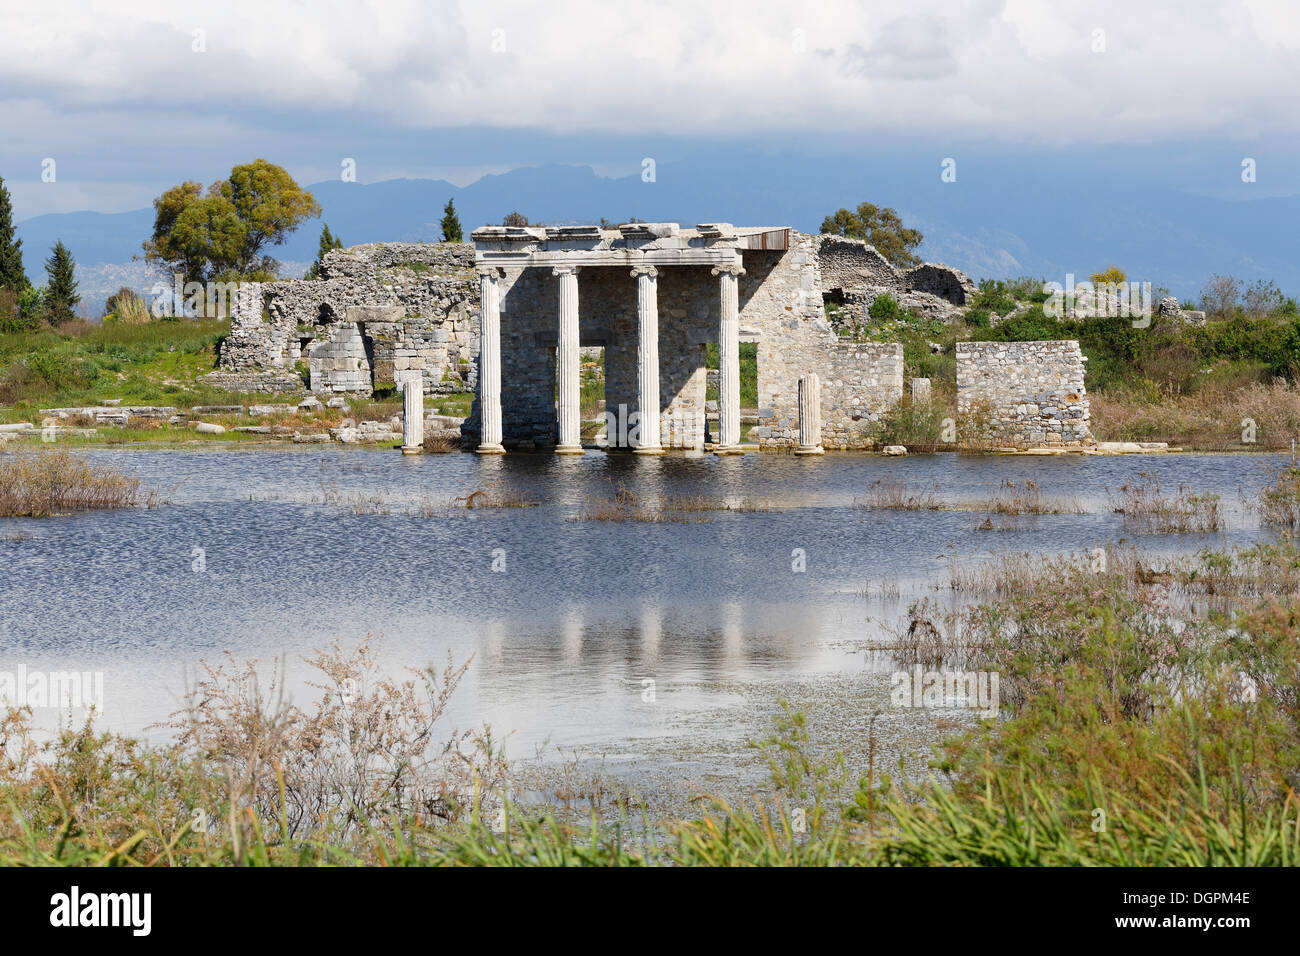 Hellenistic Gymnasium, ancient city of Miletus, Miletus, Aydin province, Aegean region, Turkey Stock Photo